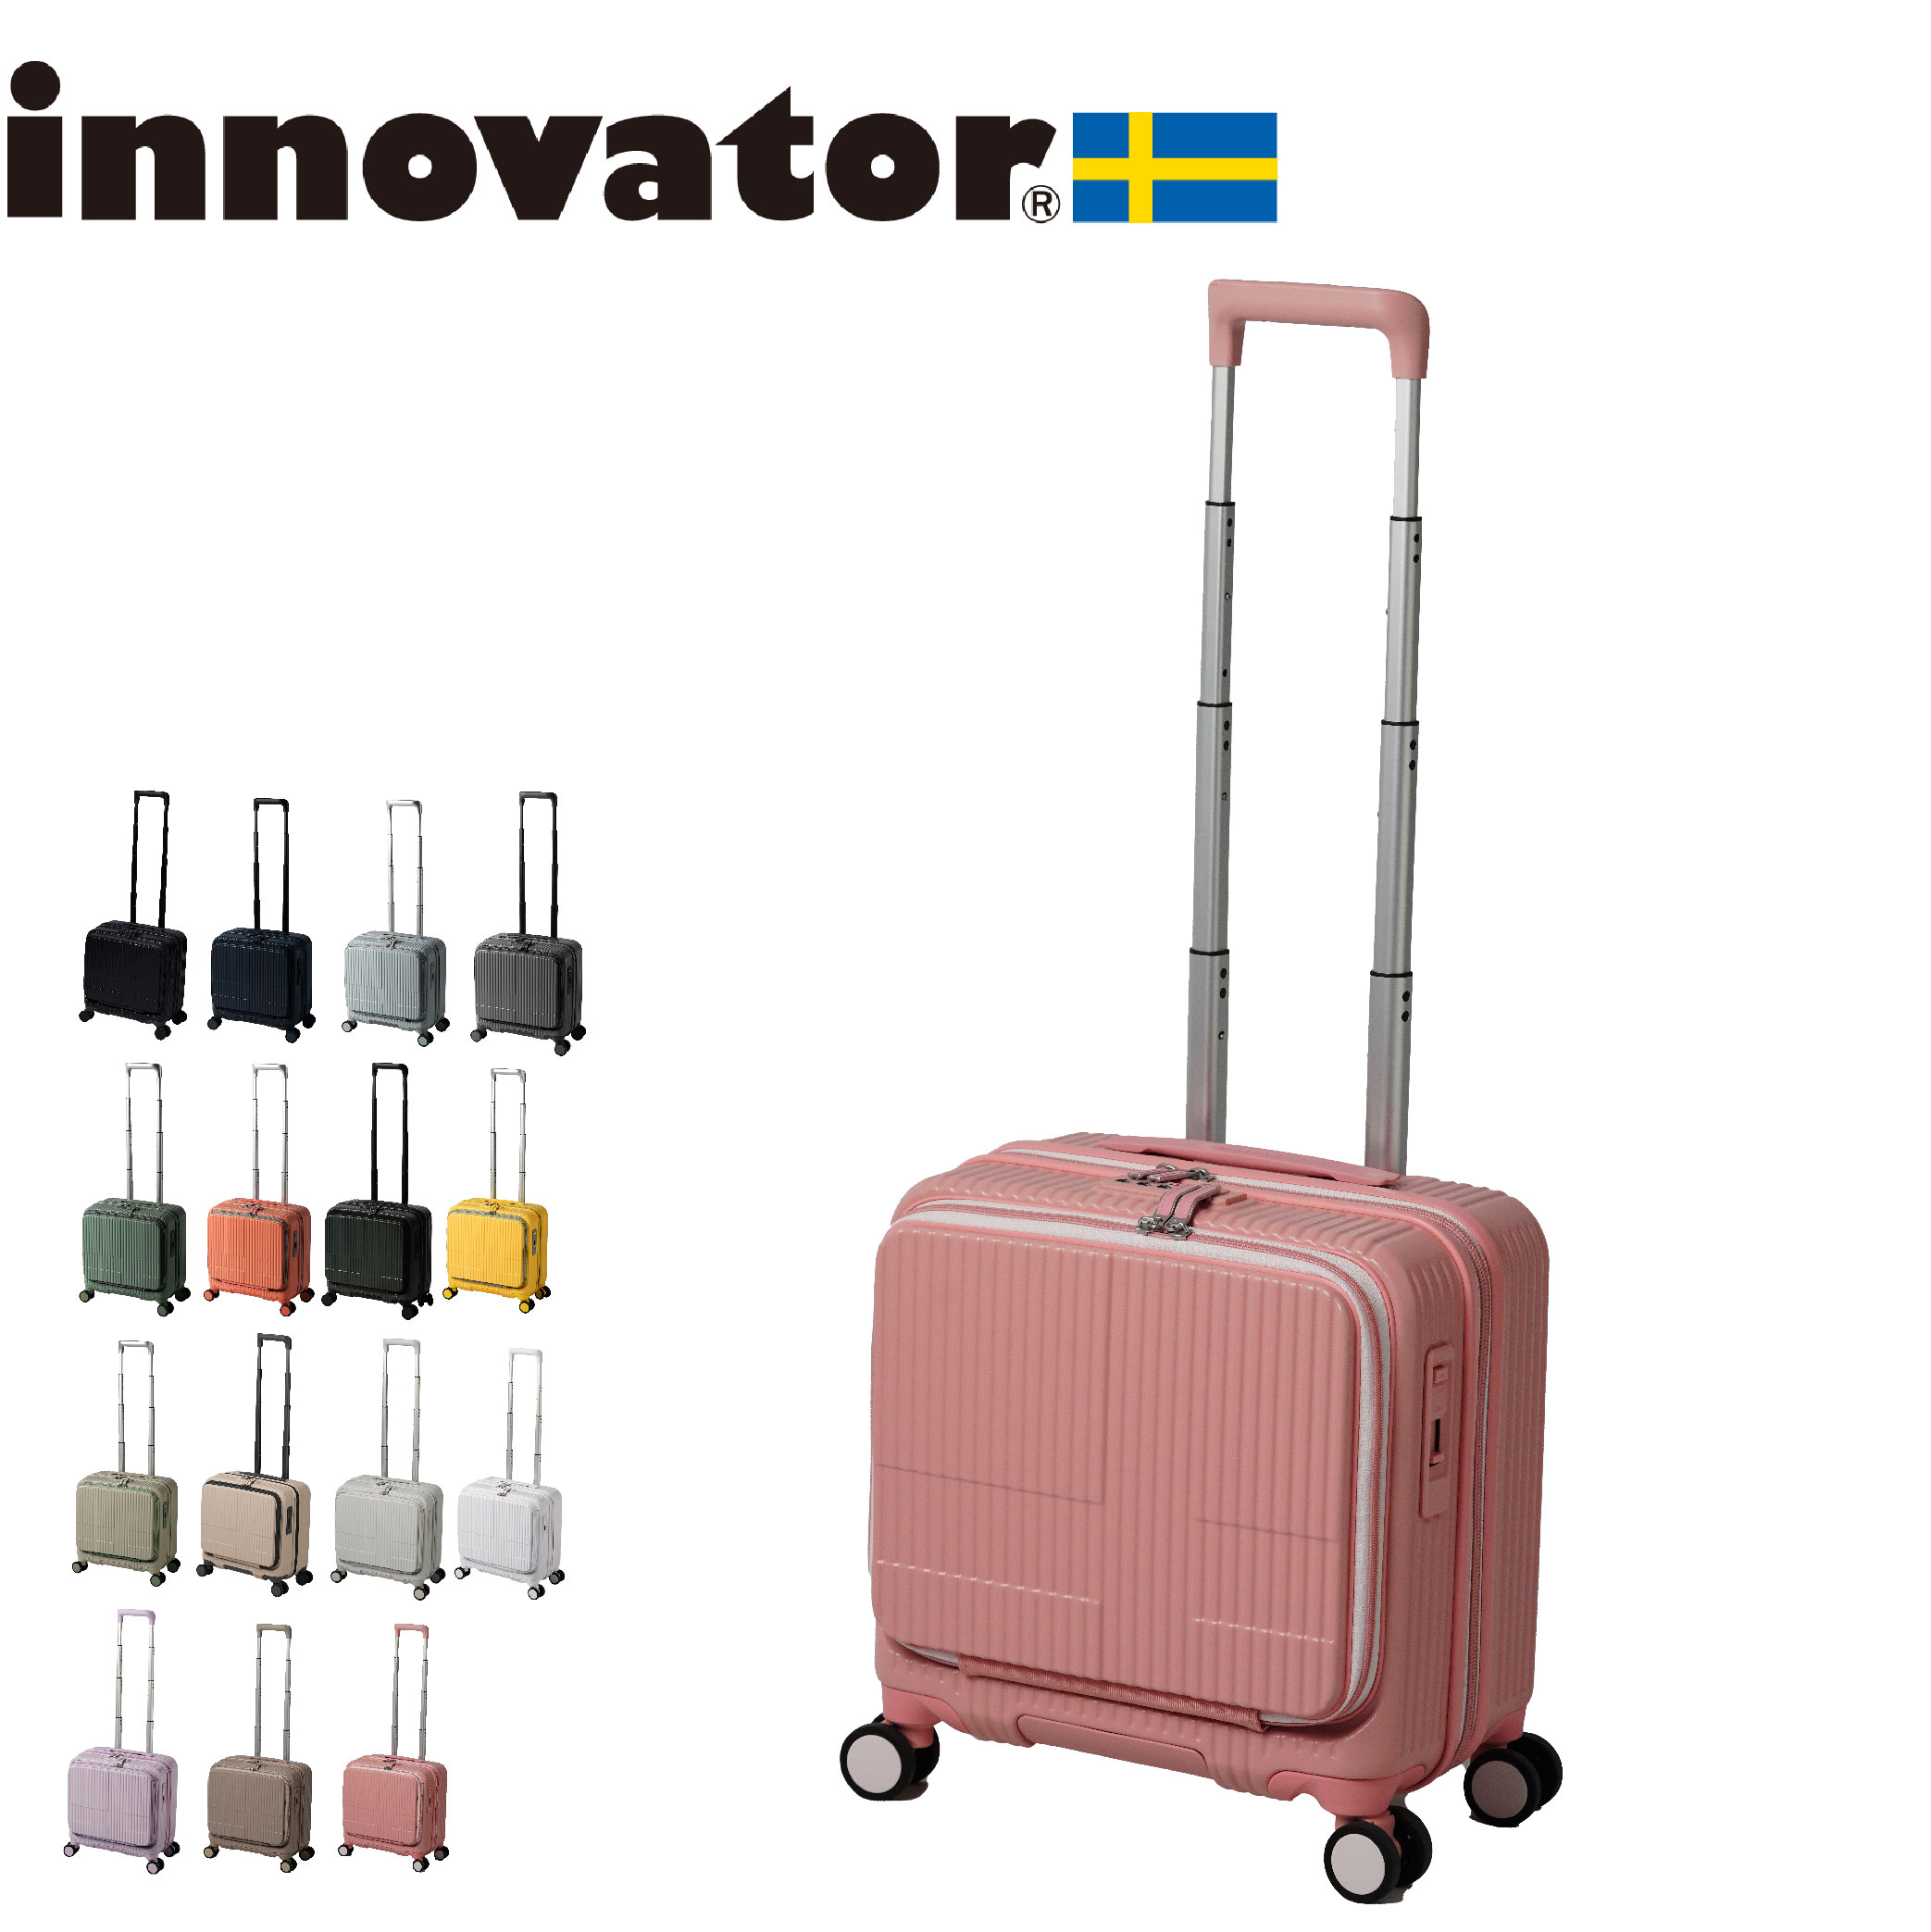 イノベーター スーツケース innovator inv20 33L Sサイズ 軽量 ジッパー フロントオープン 機内持ち込みサイズ 北欧 4輪  ペールトーン